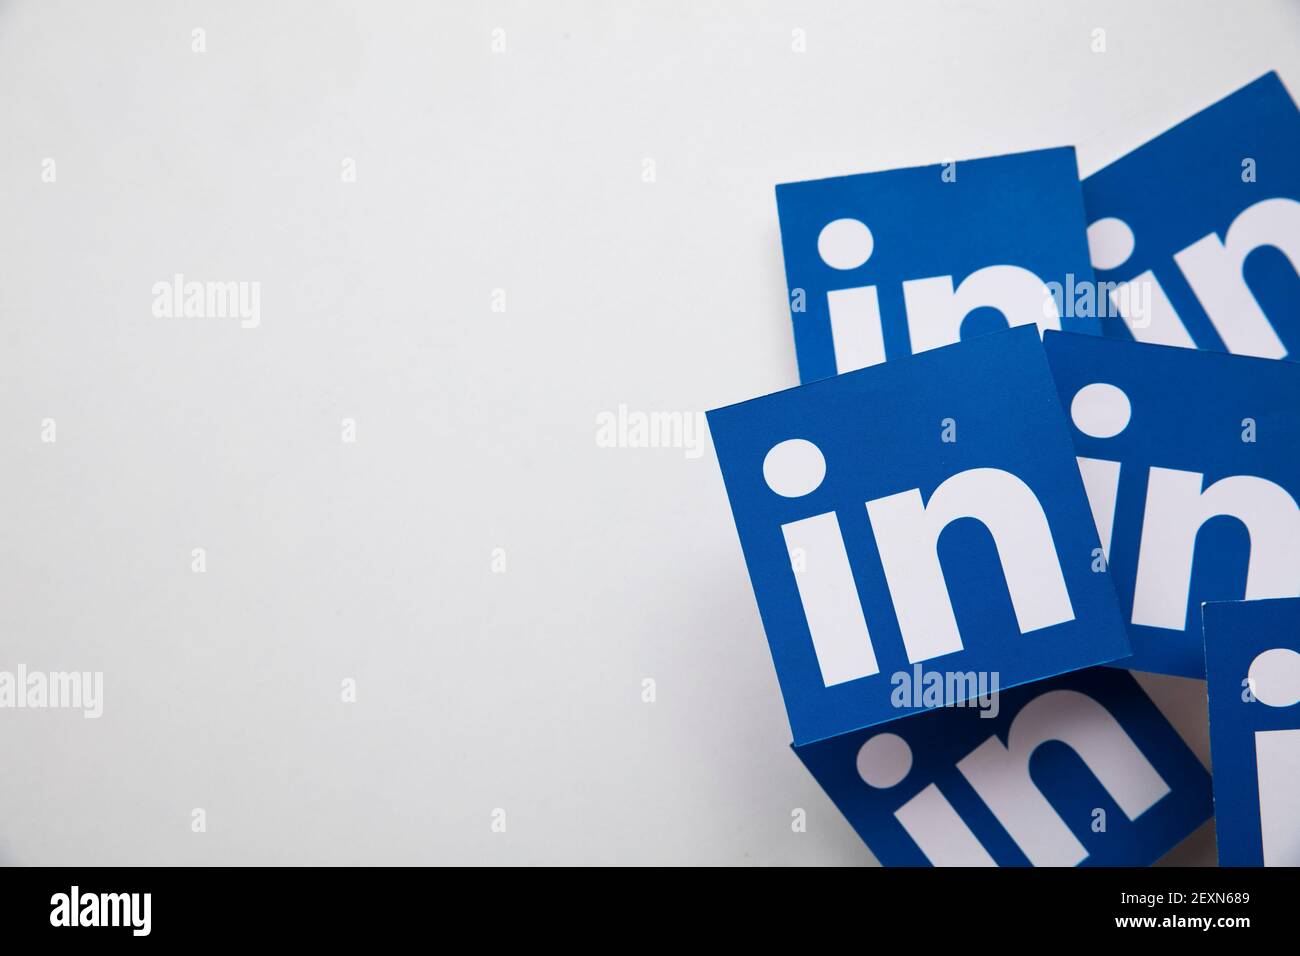 LONDRES, Royaume-Uni - Mars 2021 : logo de la plate-forme de réseautage social d'entreprise LinkedIn Banque D'Images